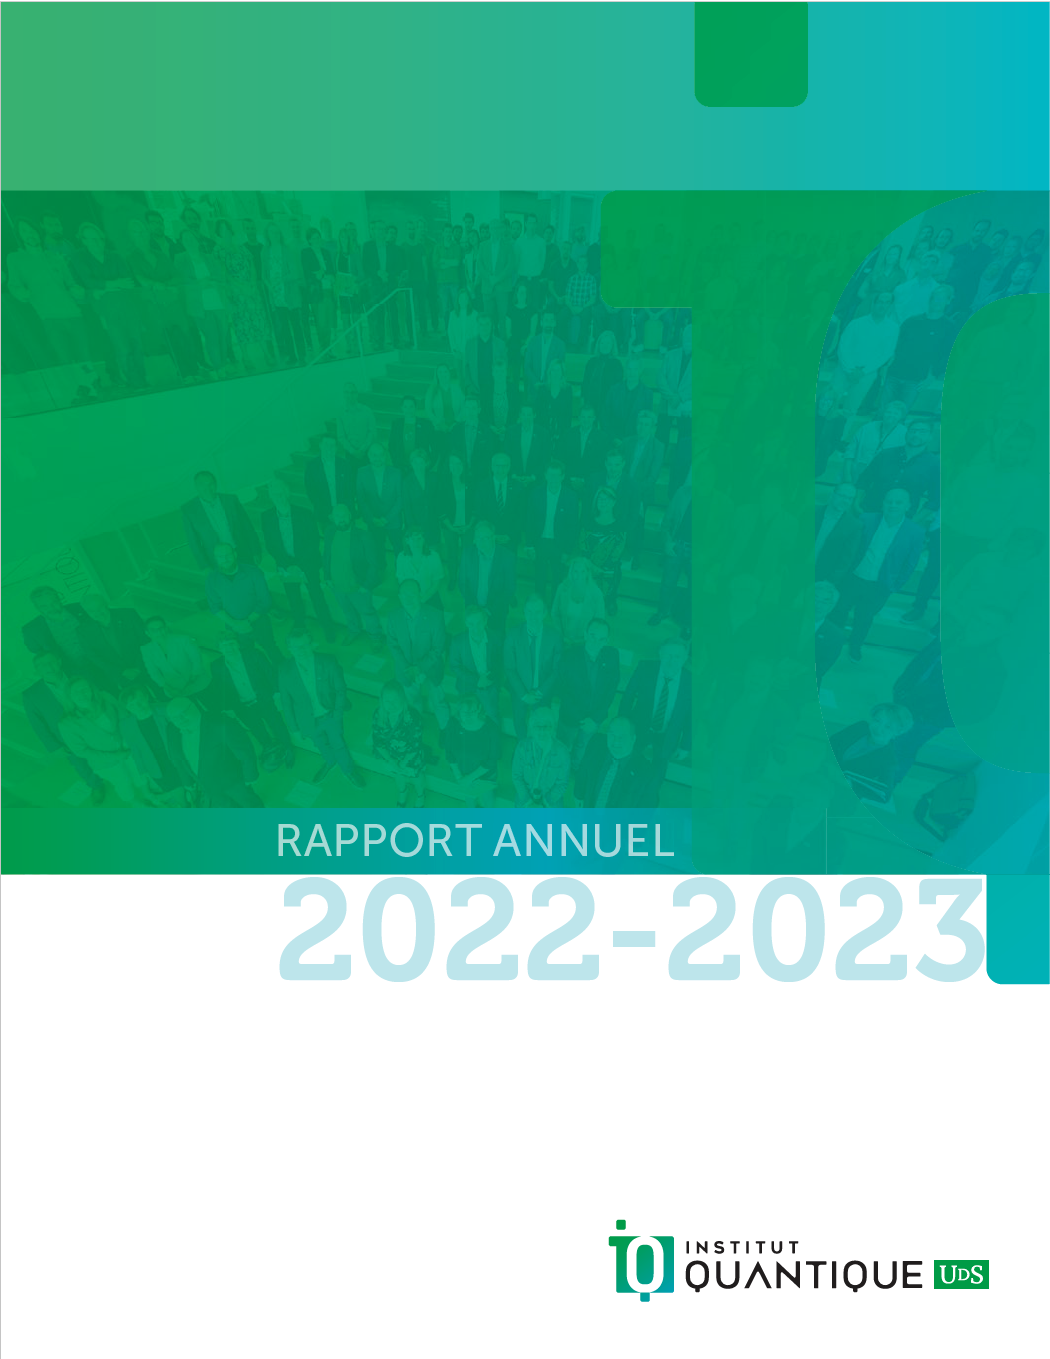 Couverture du rapport annuel 2023